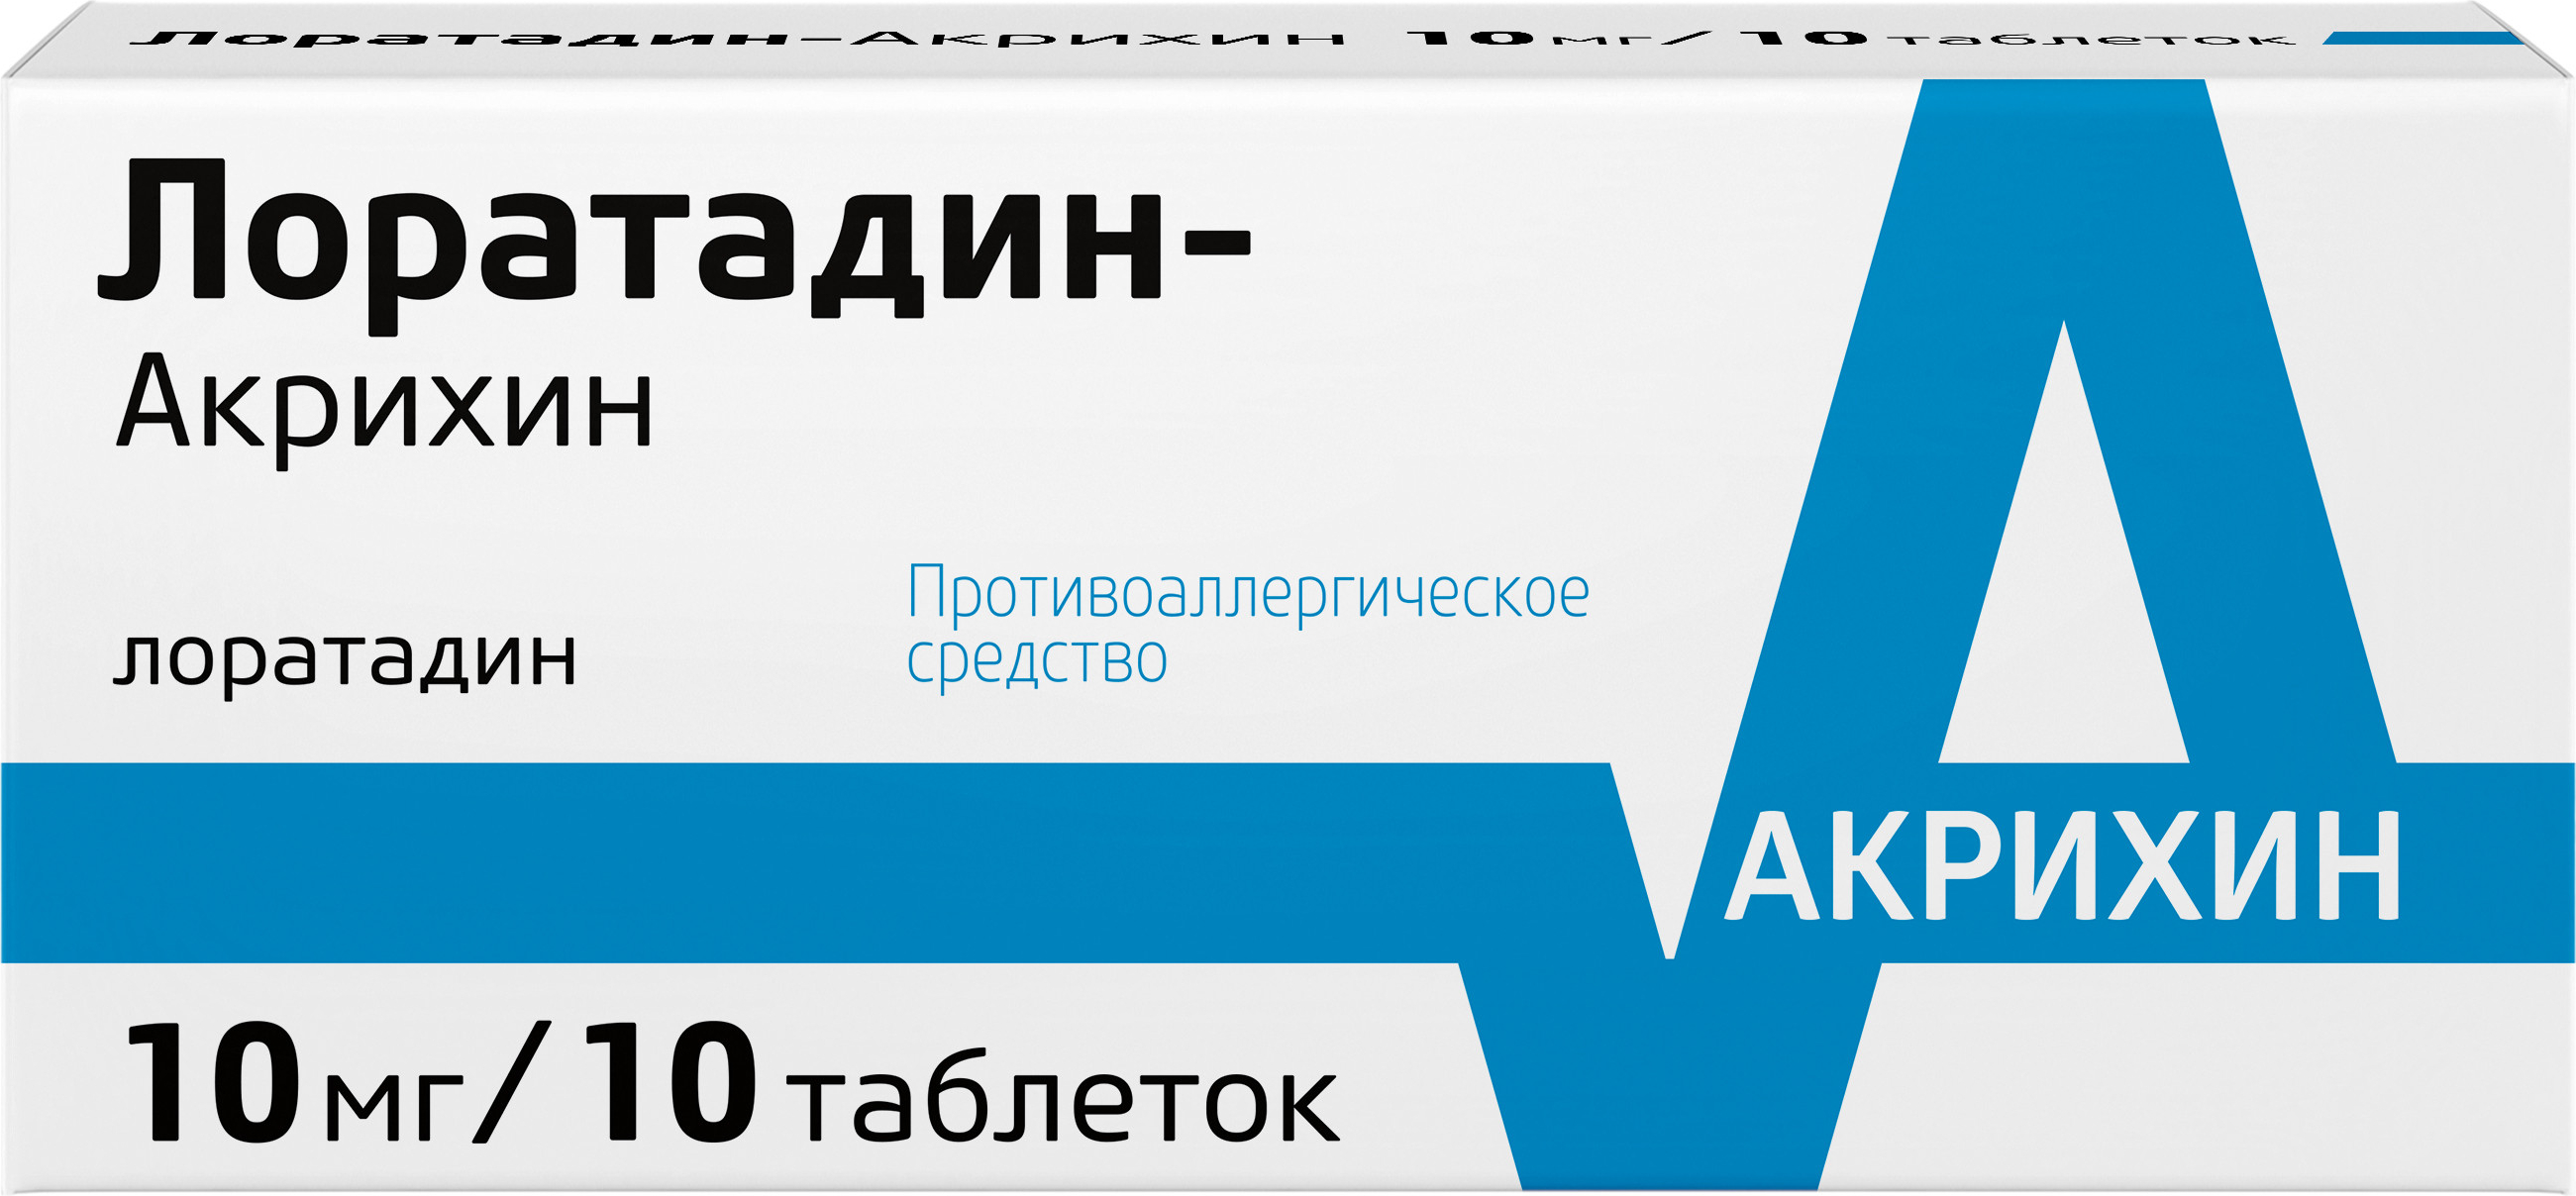 Лоратадин-Акрихин, таблетки 10 мг, 10 шт.